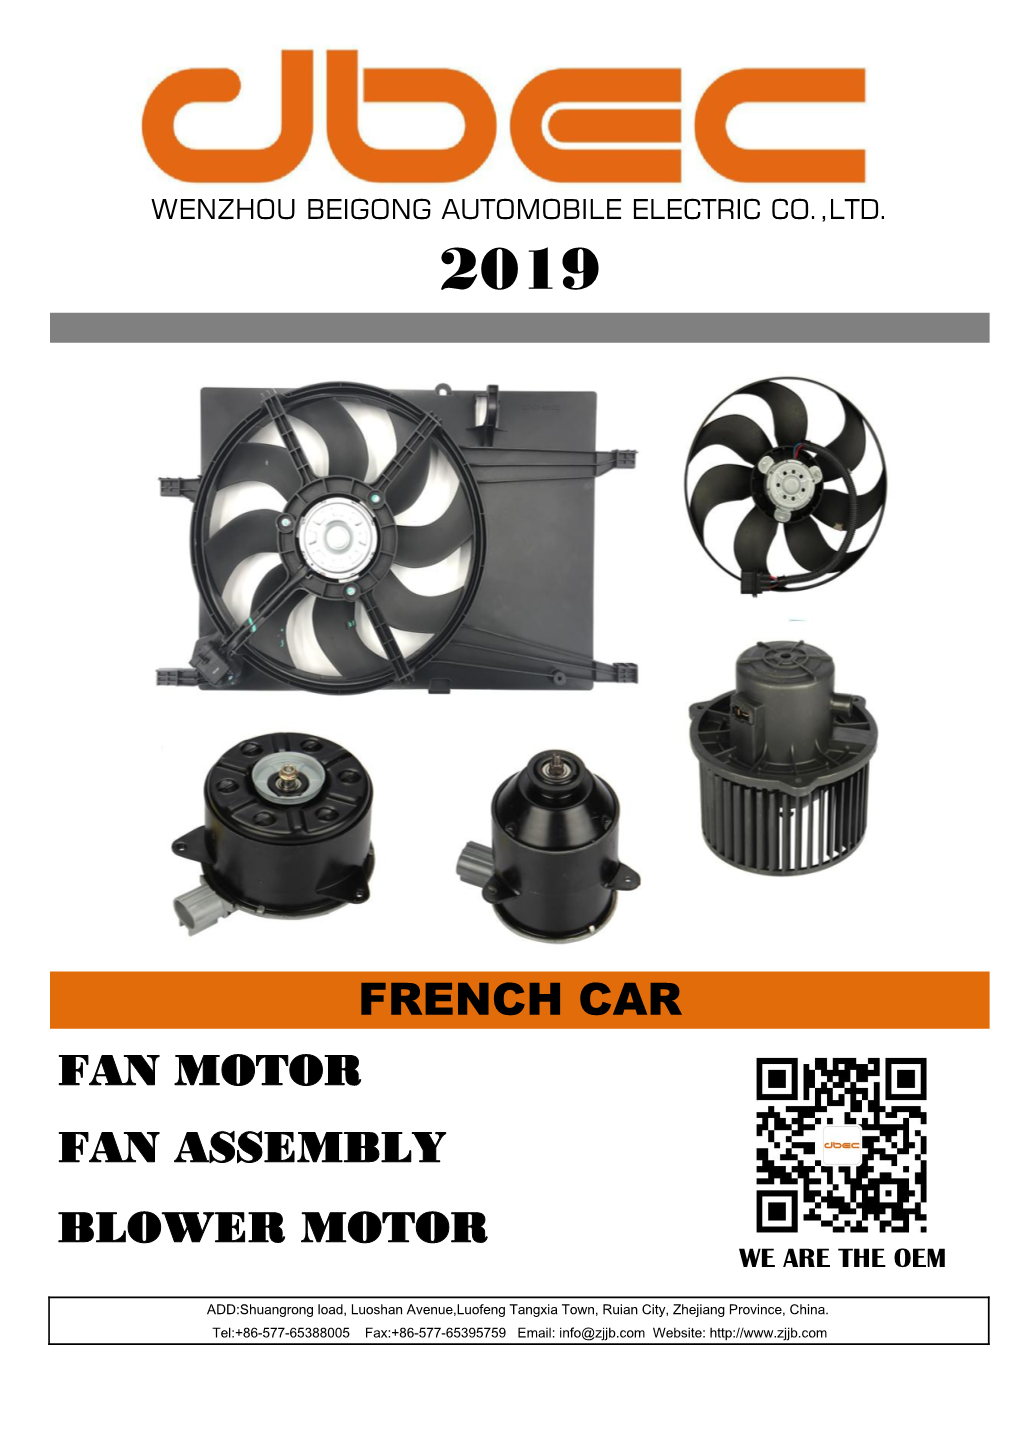 French Car Fan Motor Fan Assembly Blower Motor We Are the Oem